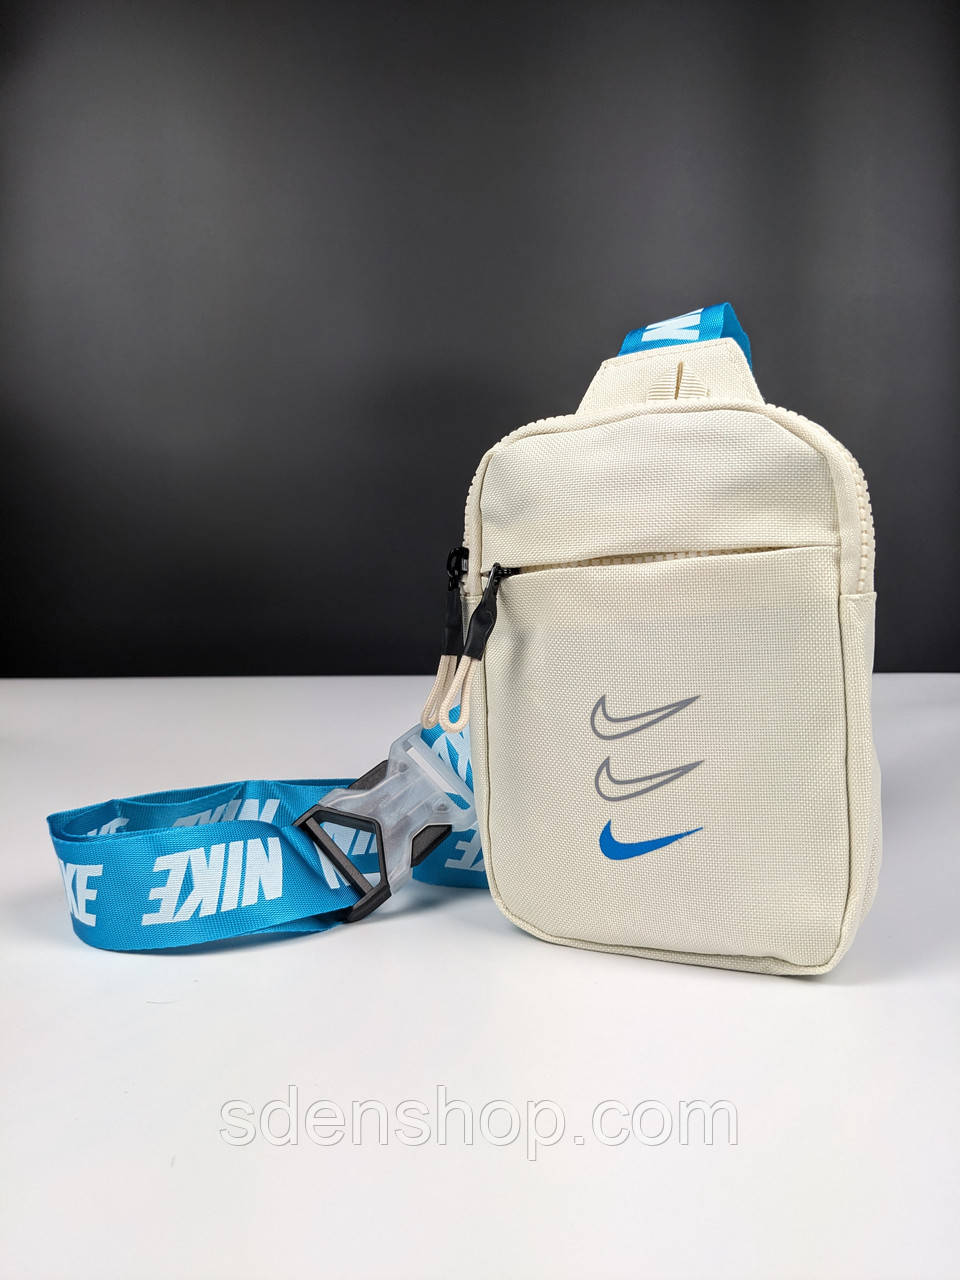 Сумка Nike Mini Bag Swoosh, Молочна, Месенджер, сумка через плече, барсетка Найк